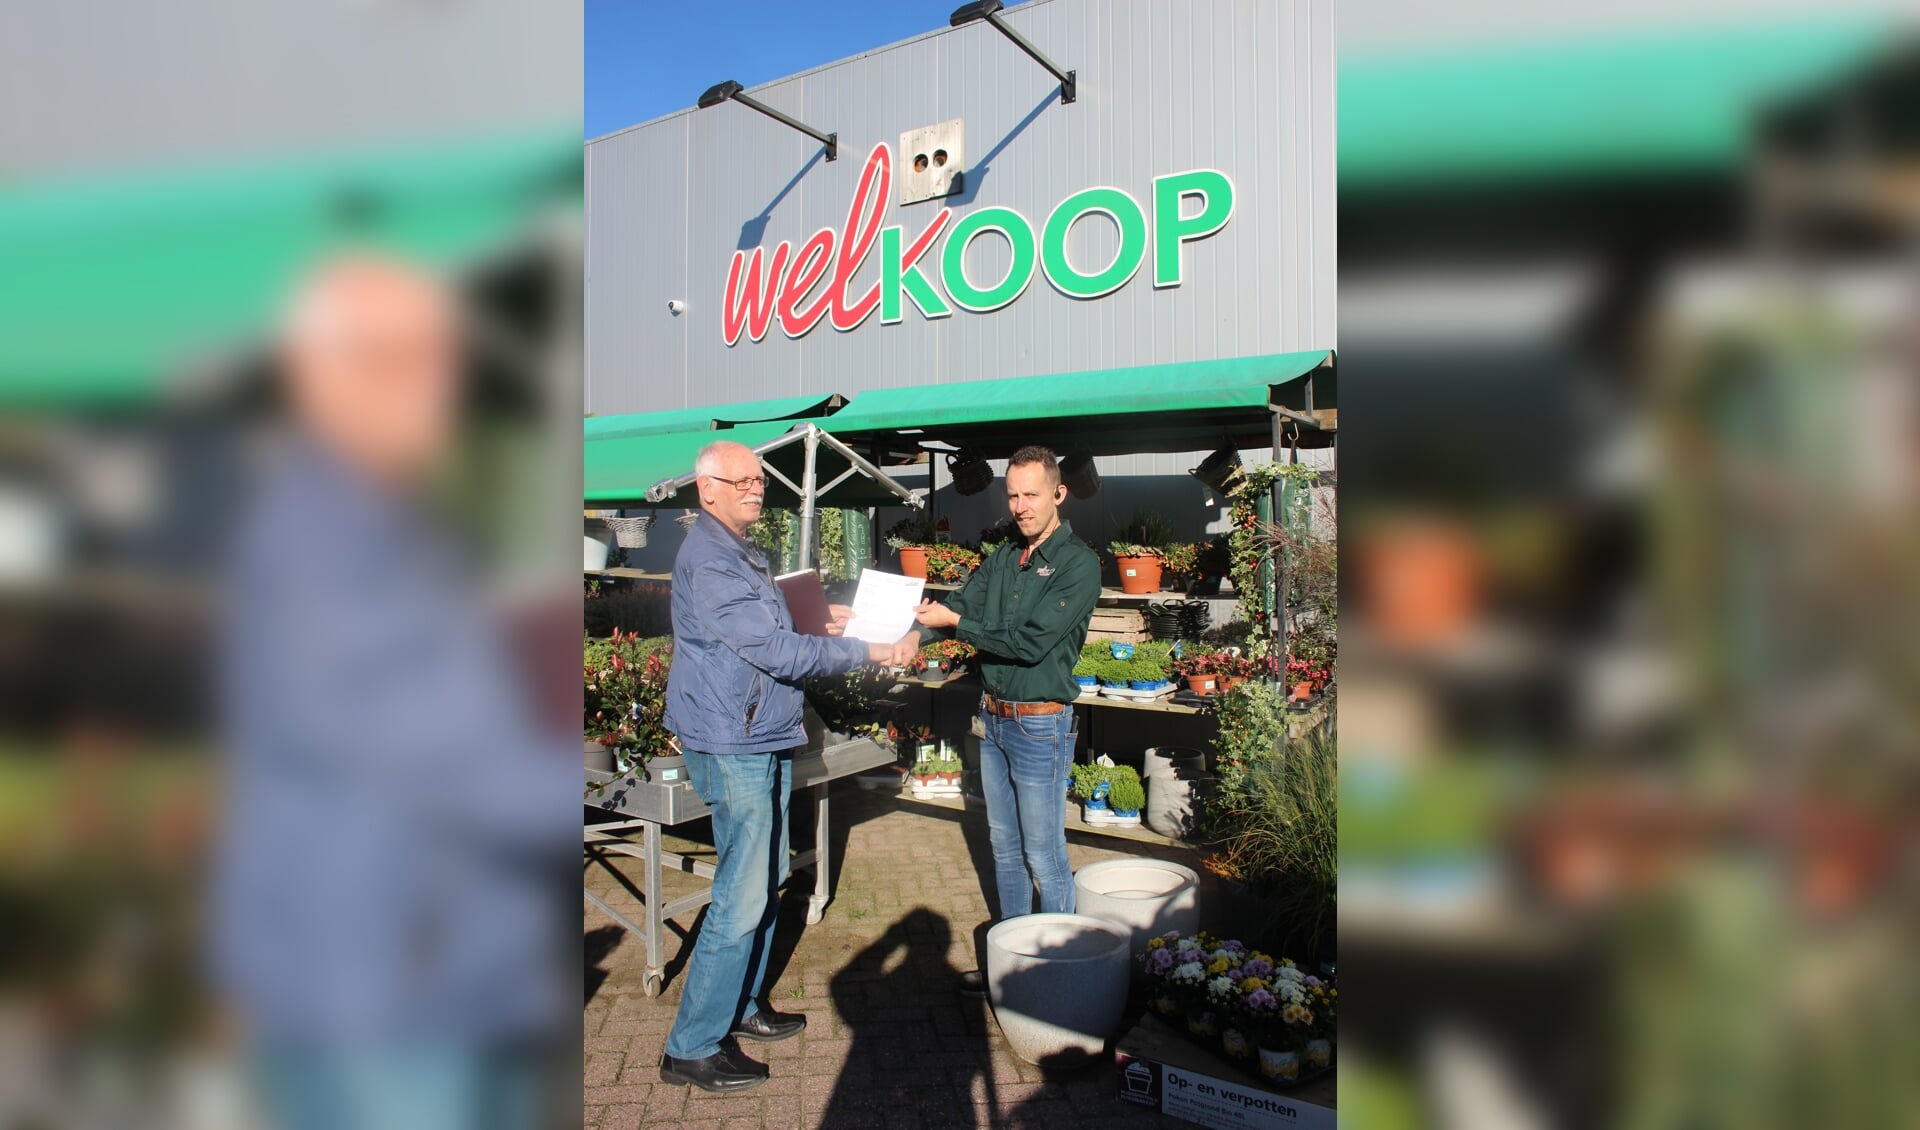 • De overhandiging van de sponsorovereenkomst met Adriaan Ritmeester van Welkoop Giessenburg (r) en Wim Kafoe (voorzitter buurtbusvereniging)